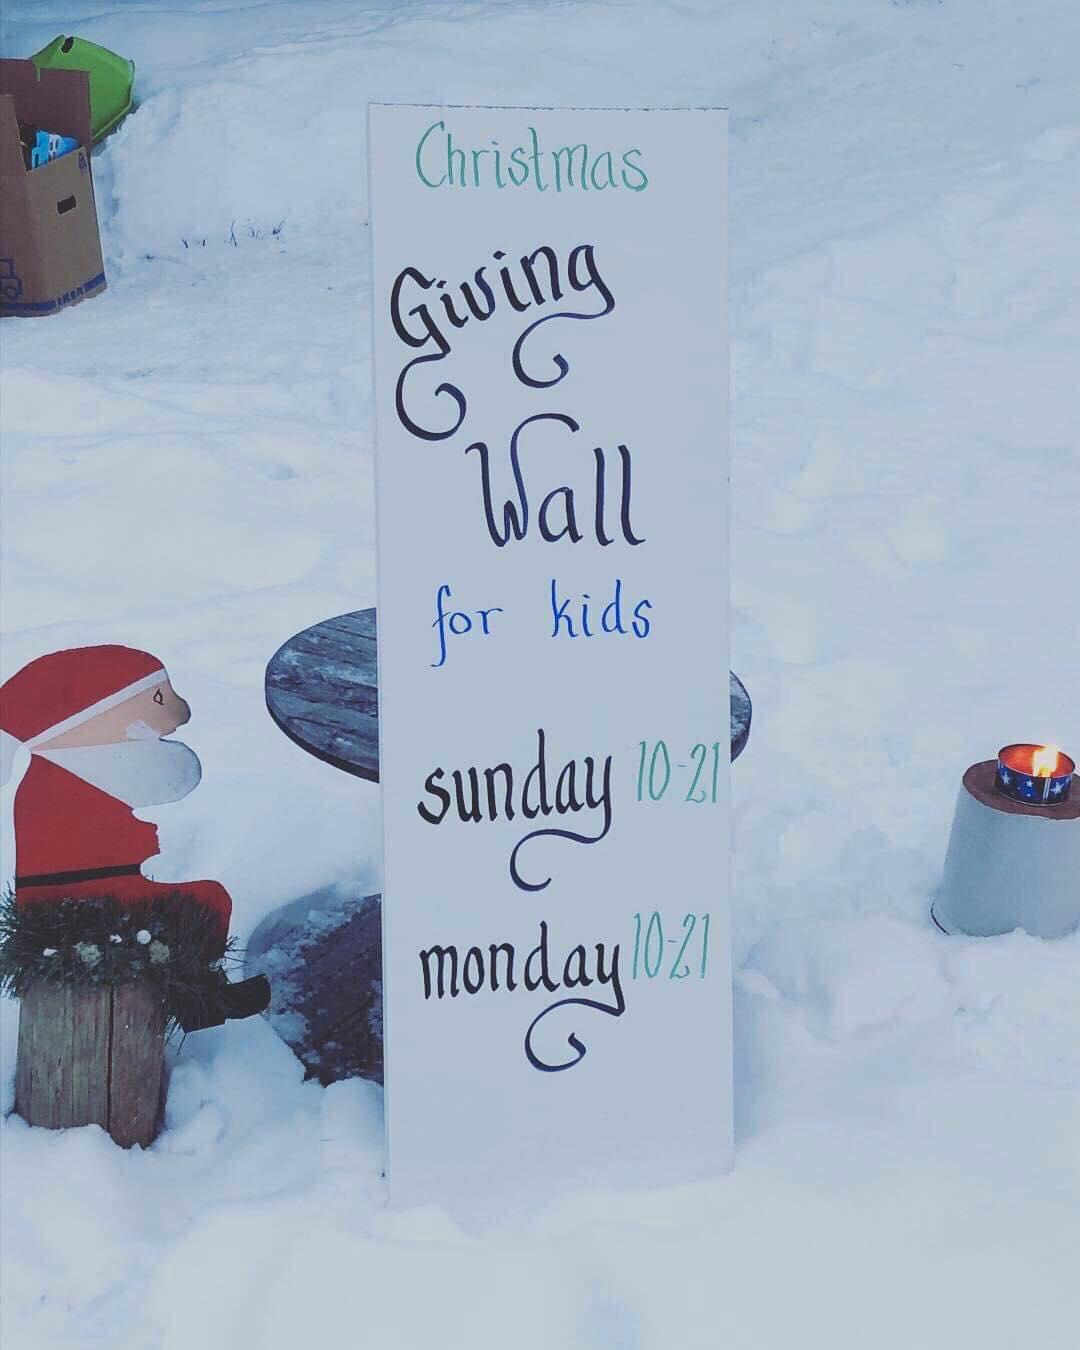 Hans gest ledde nämligen till ”Christmas giving wall for kids”. 